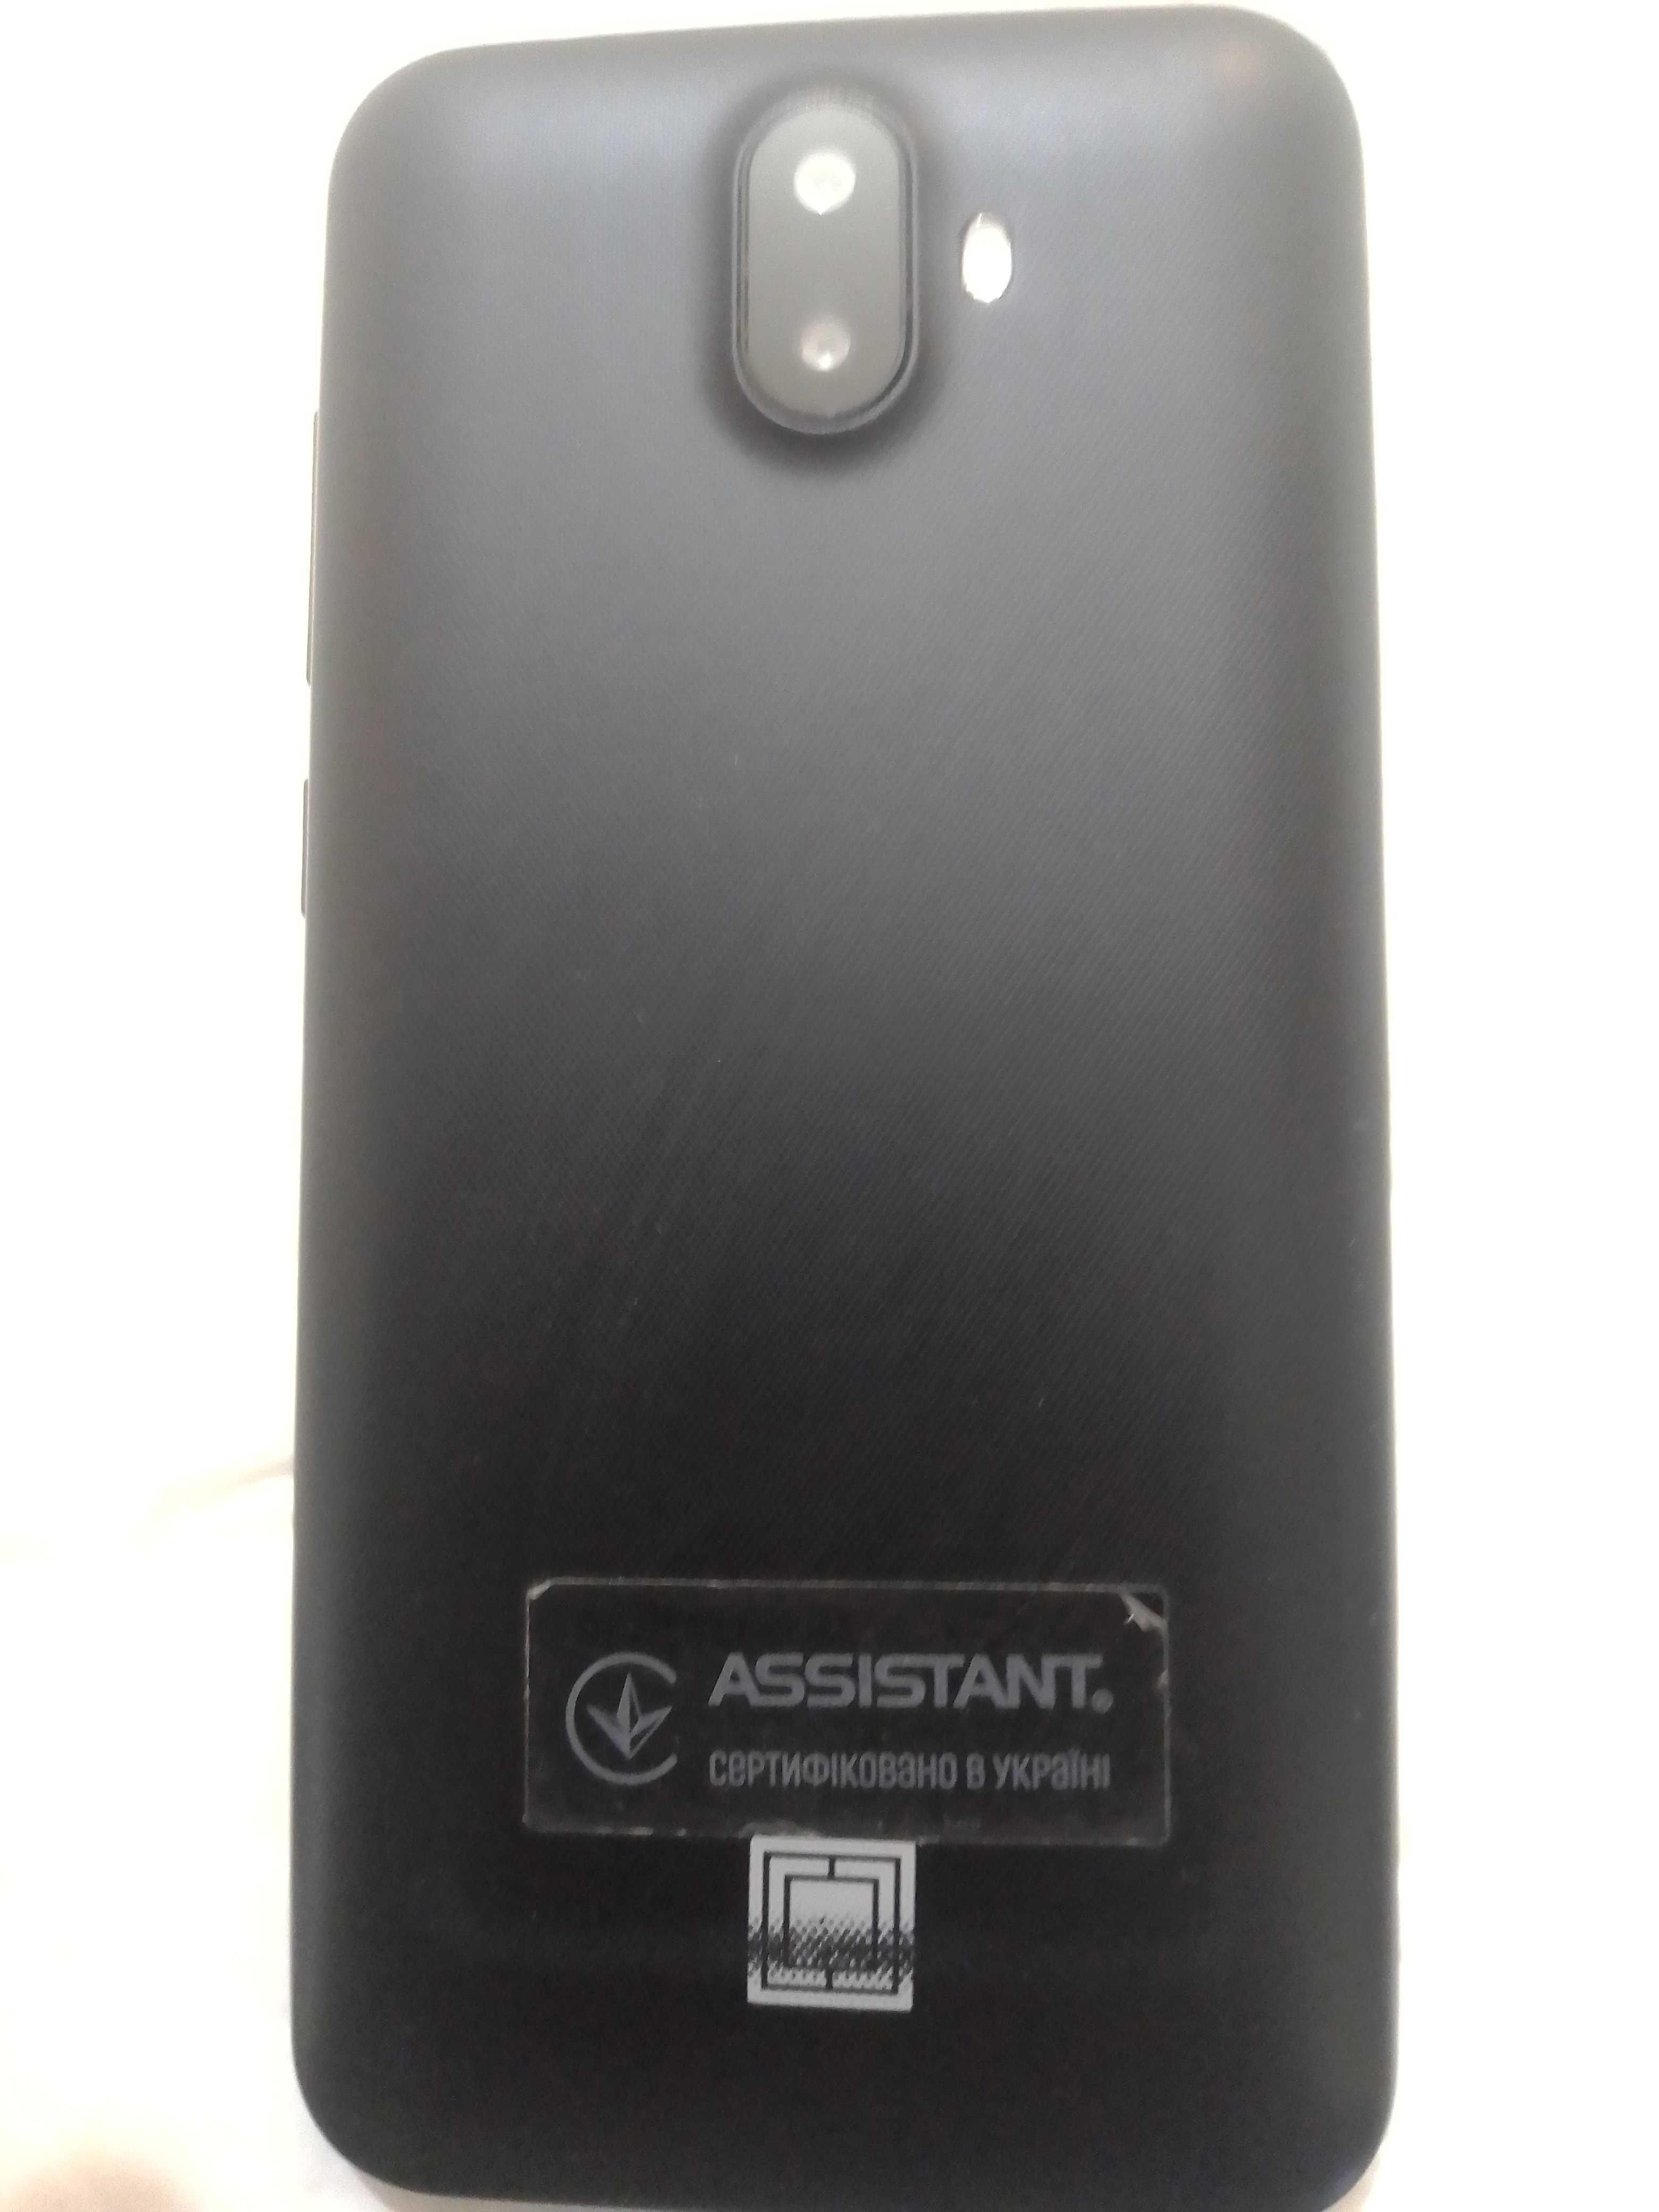 Смартфон планшет Мобильный assistant as-502, экран 5 Дюймов Android